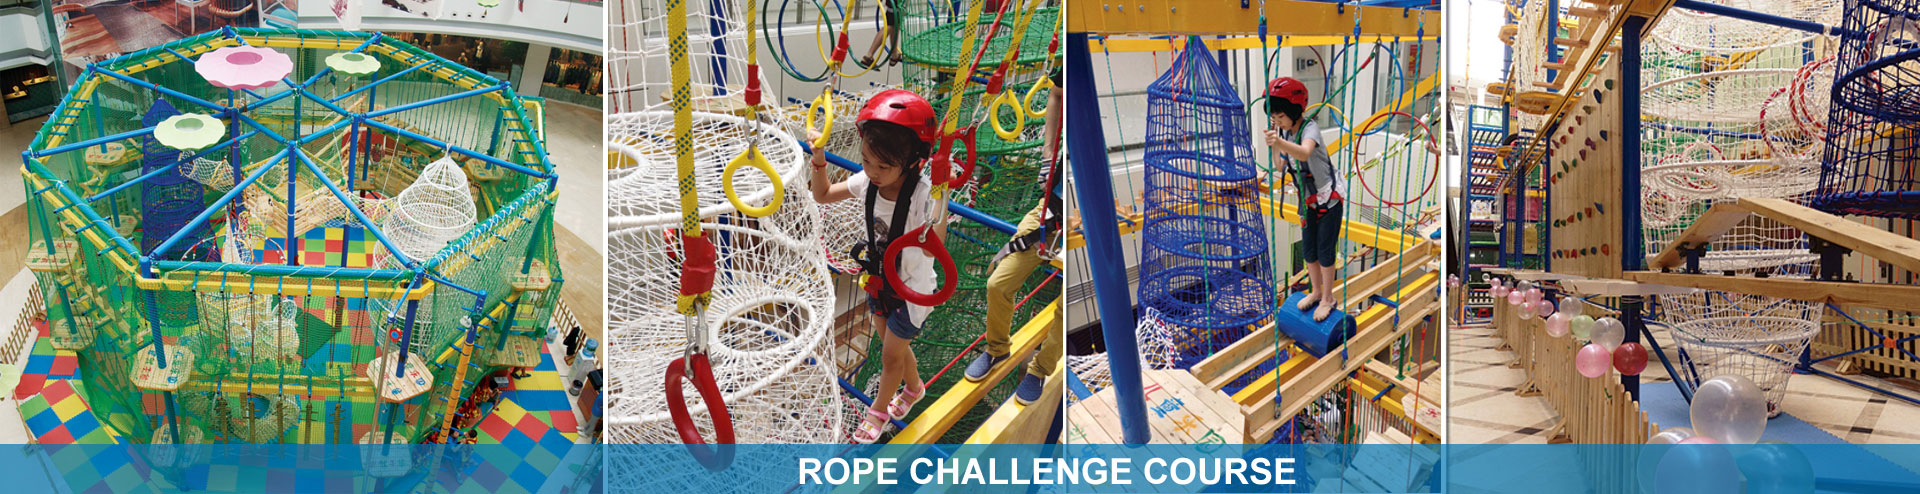 Program in Rope Playground